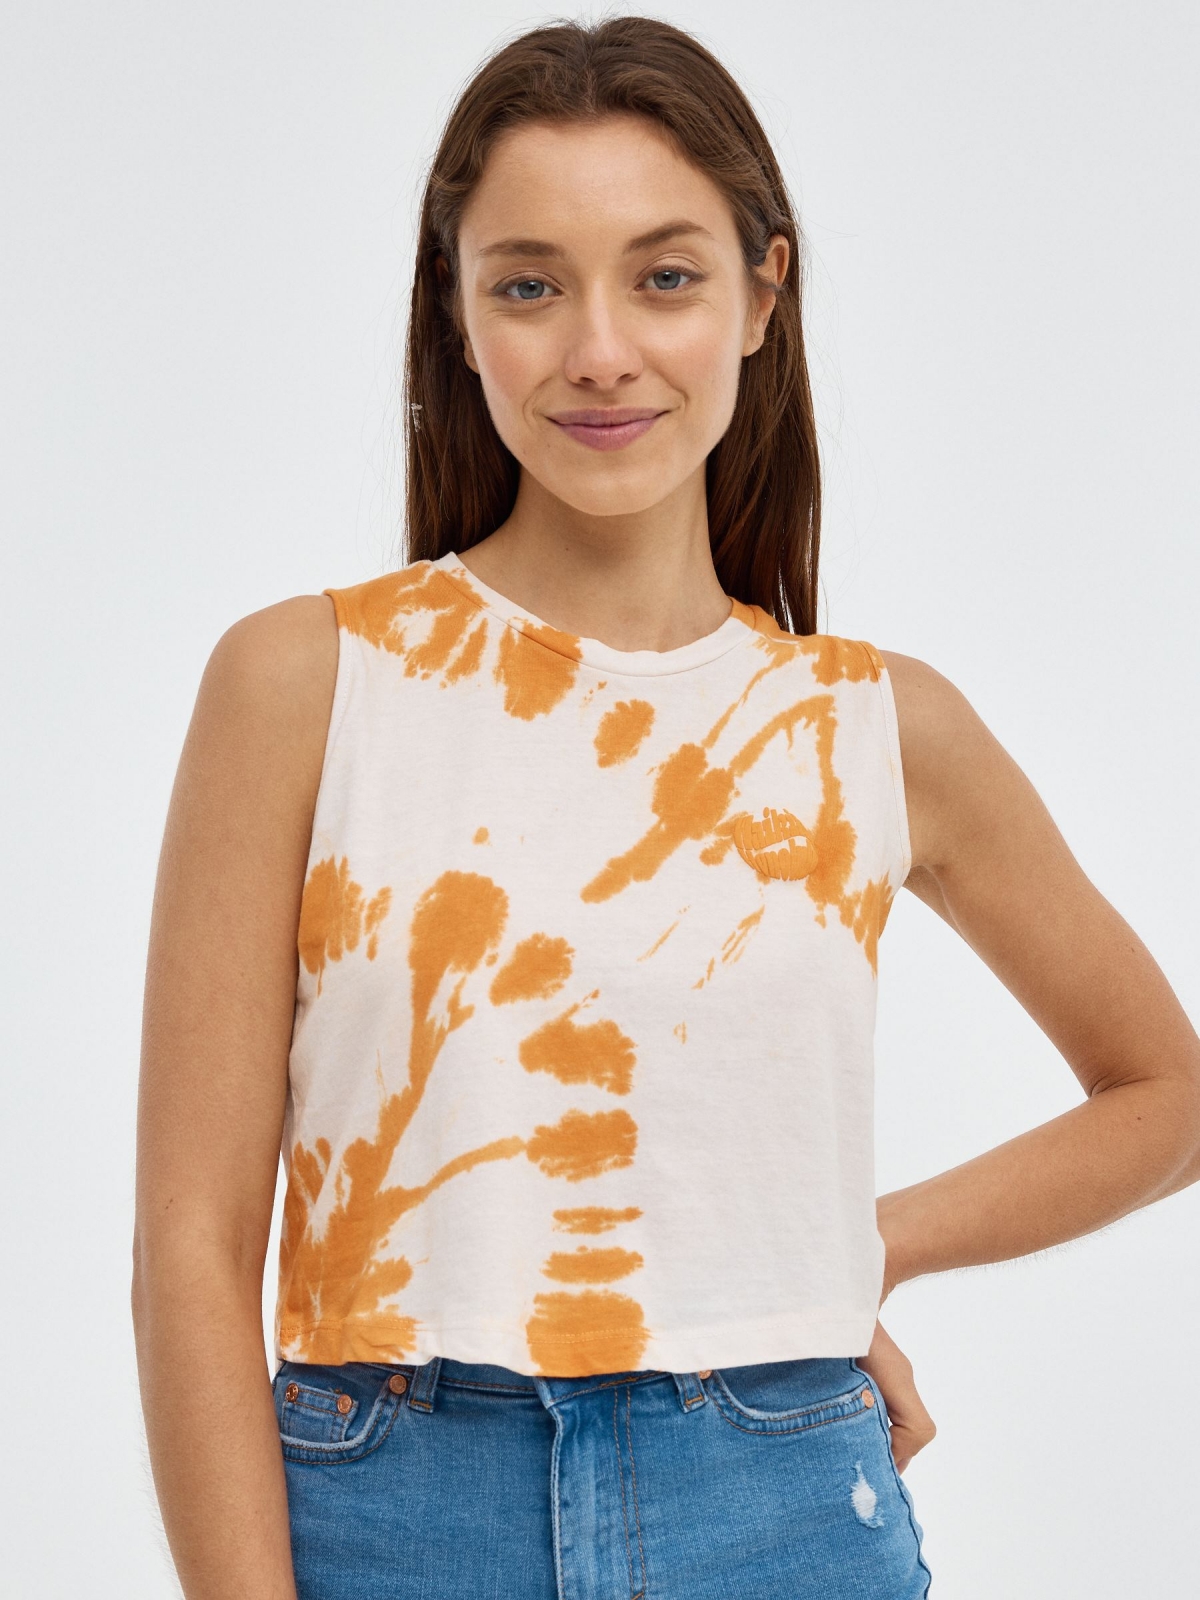 Camiseta sin mangas Tie&dye naranja caldera vista media frontal